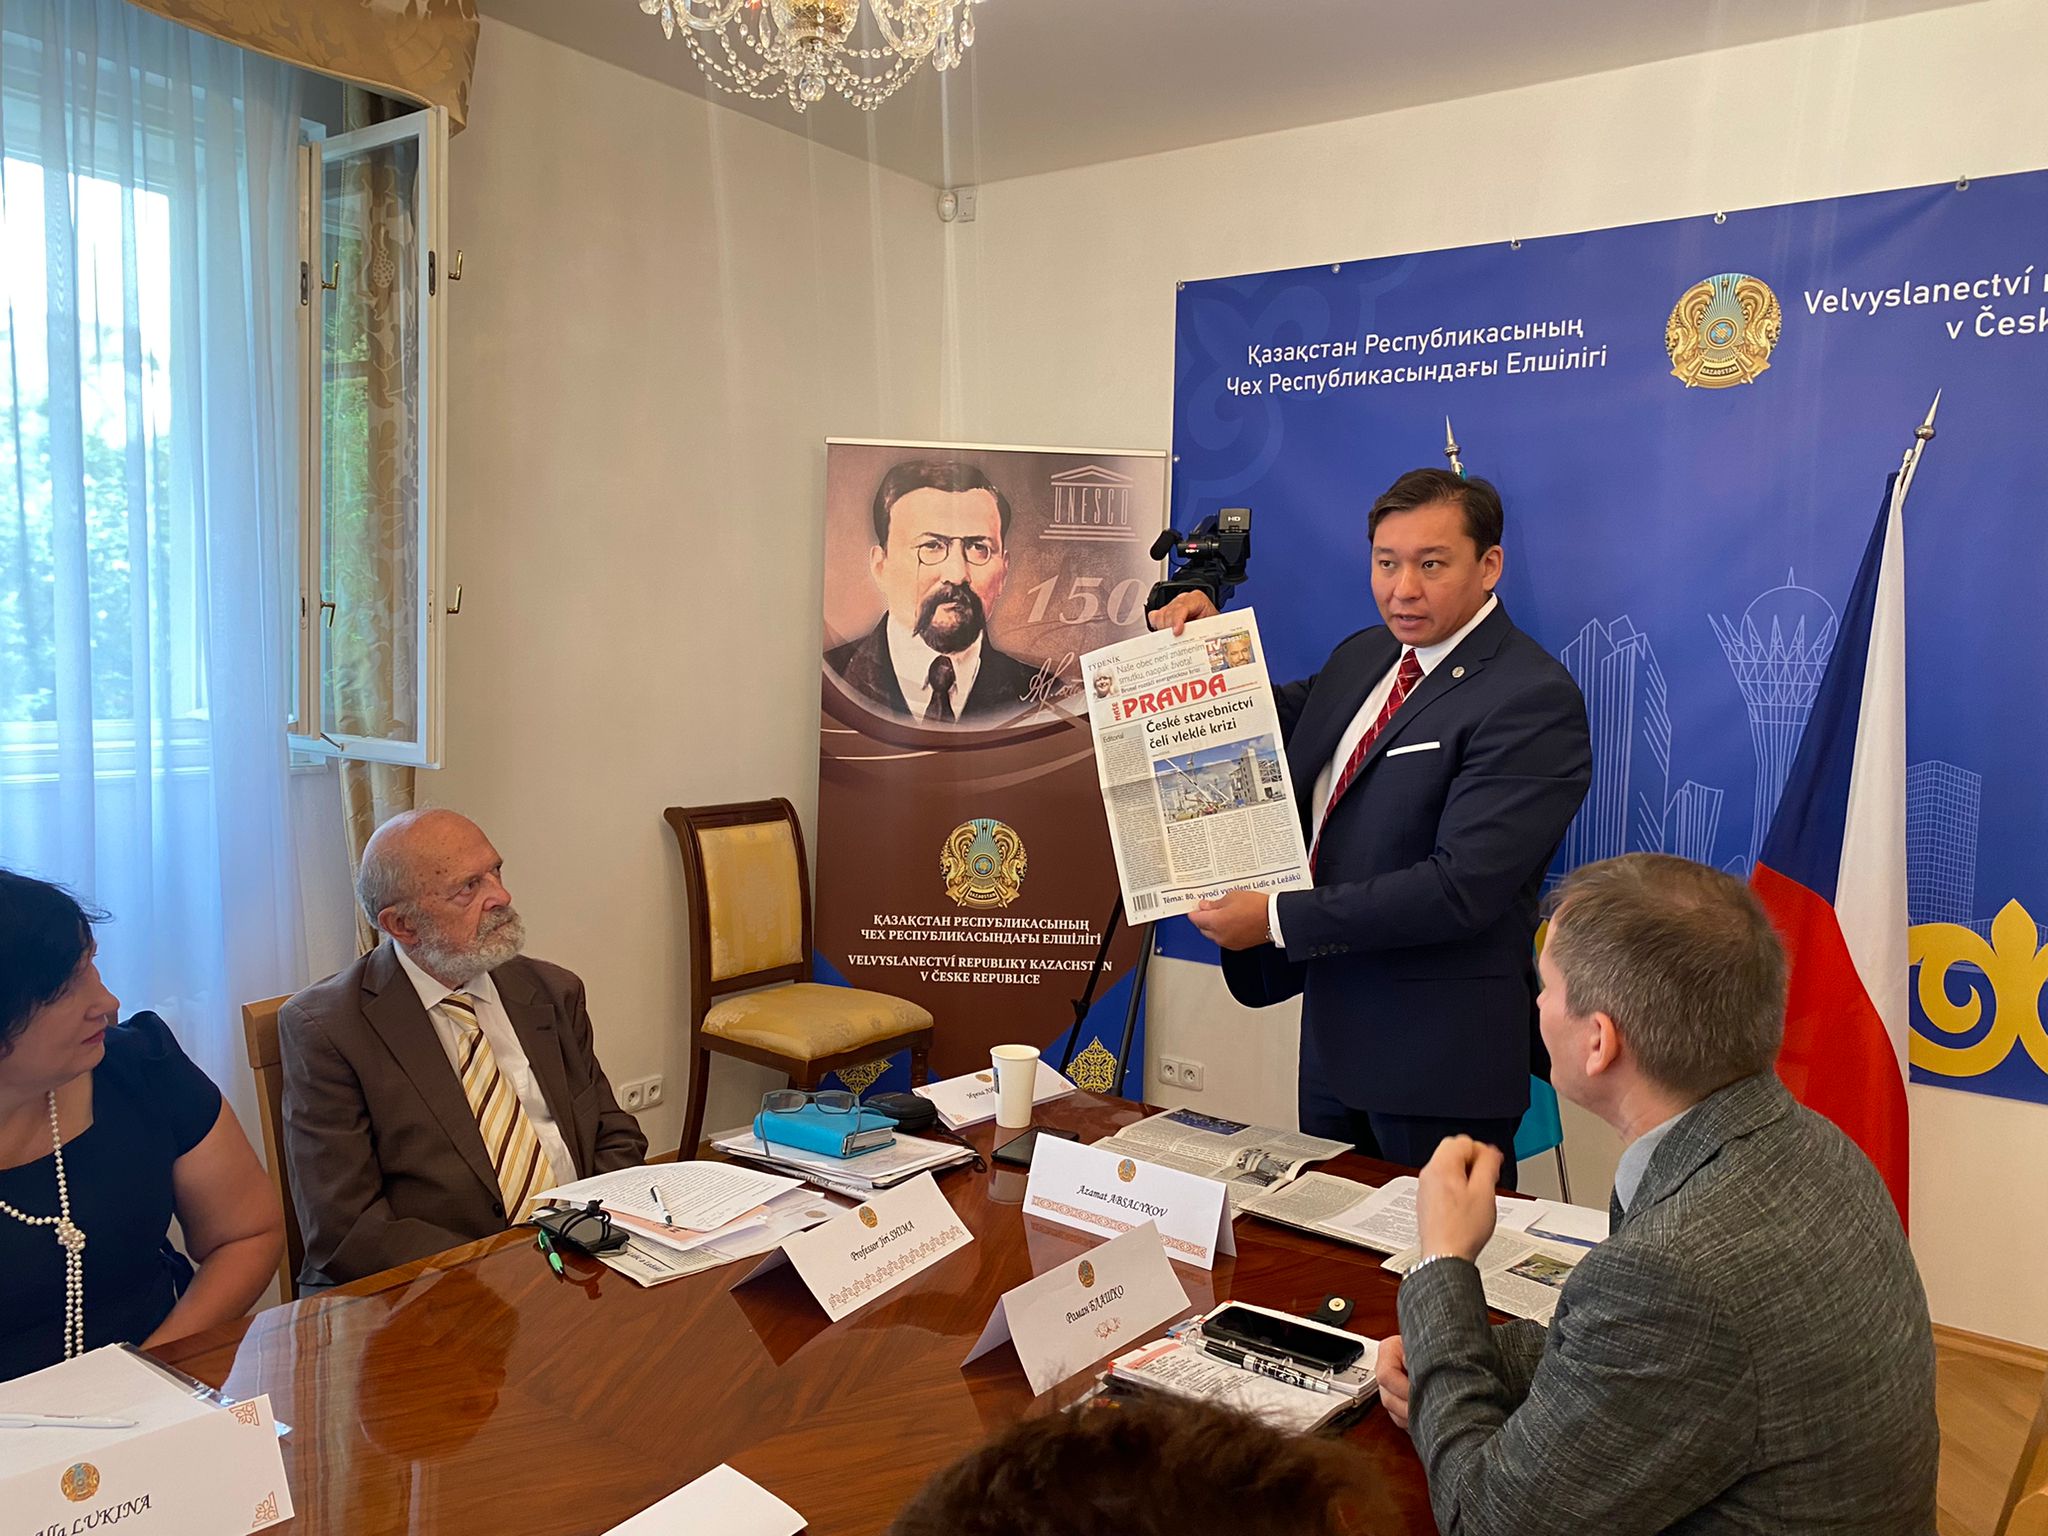 Čeští novináři projevili opravdový zájem o národní referendum o základním zákonu a důležité politické reformy v Kazachstánu